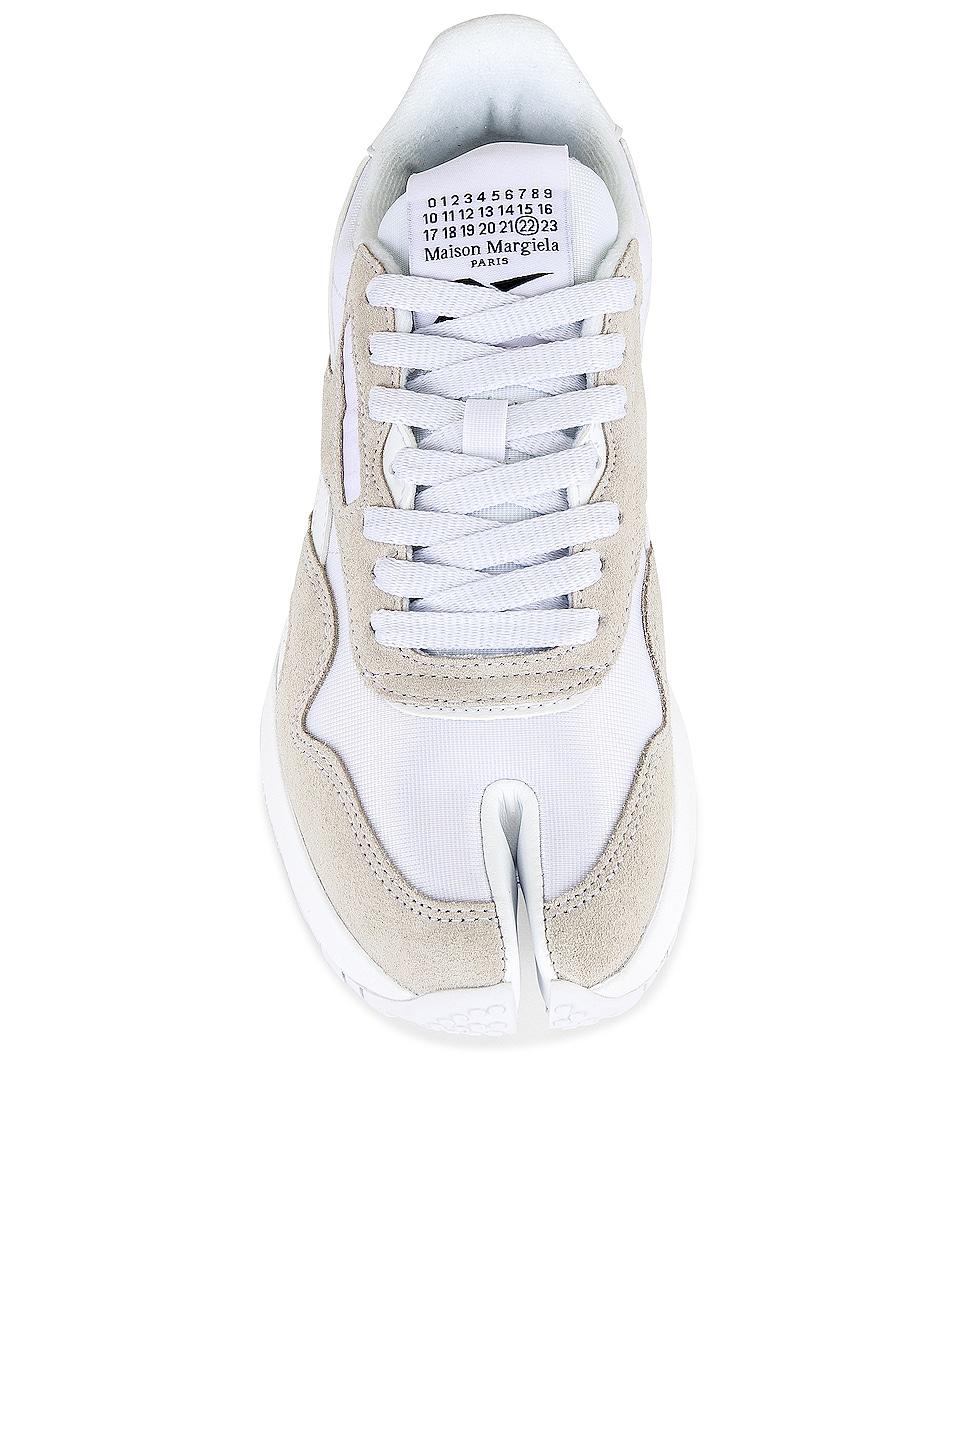 MAISON MARGIELA x REEBOK Project Nylon Sneaker in White Lyst